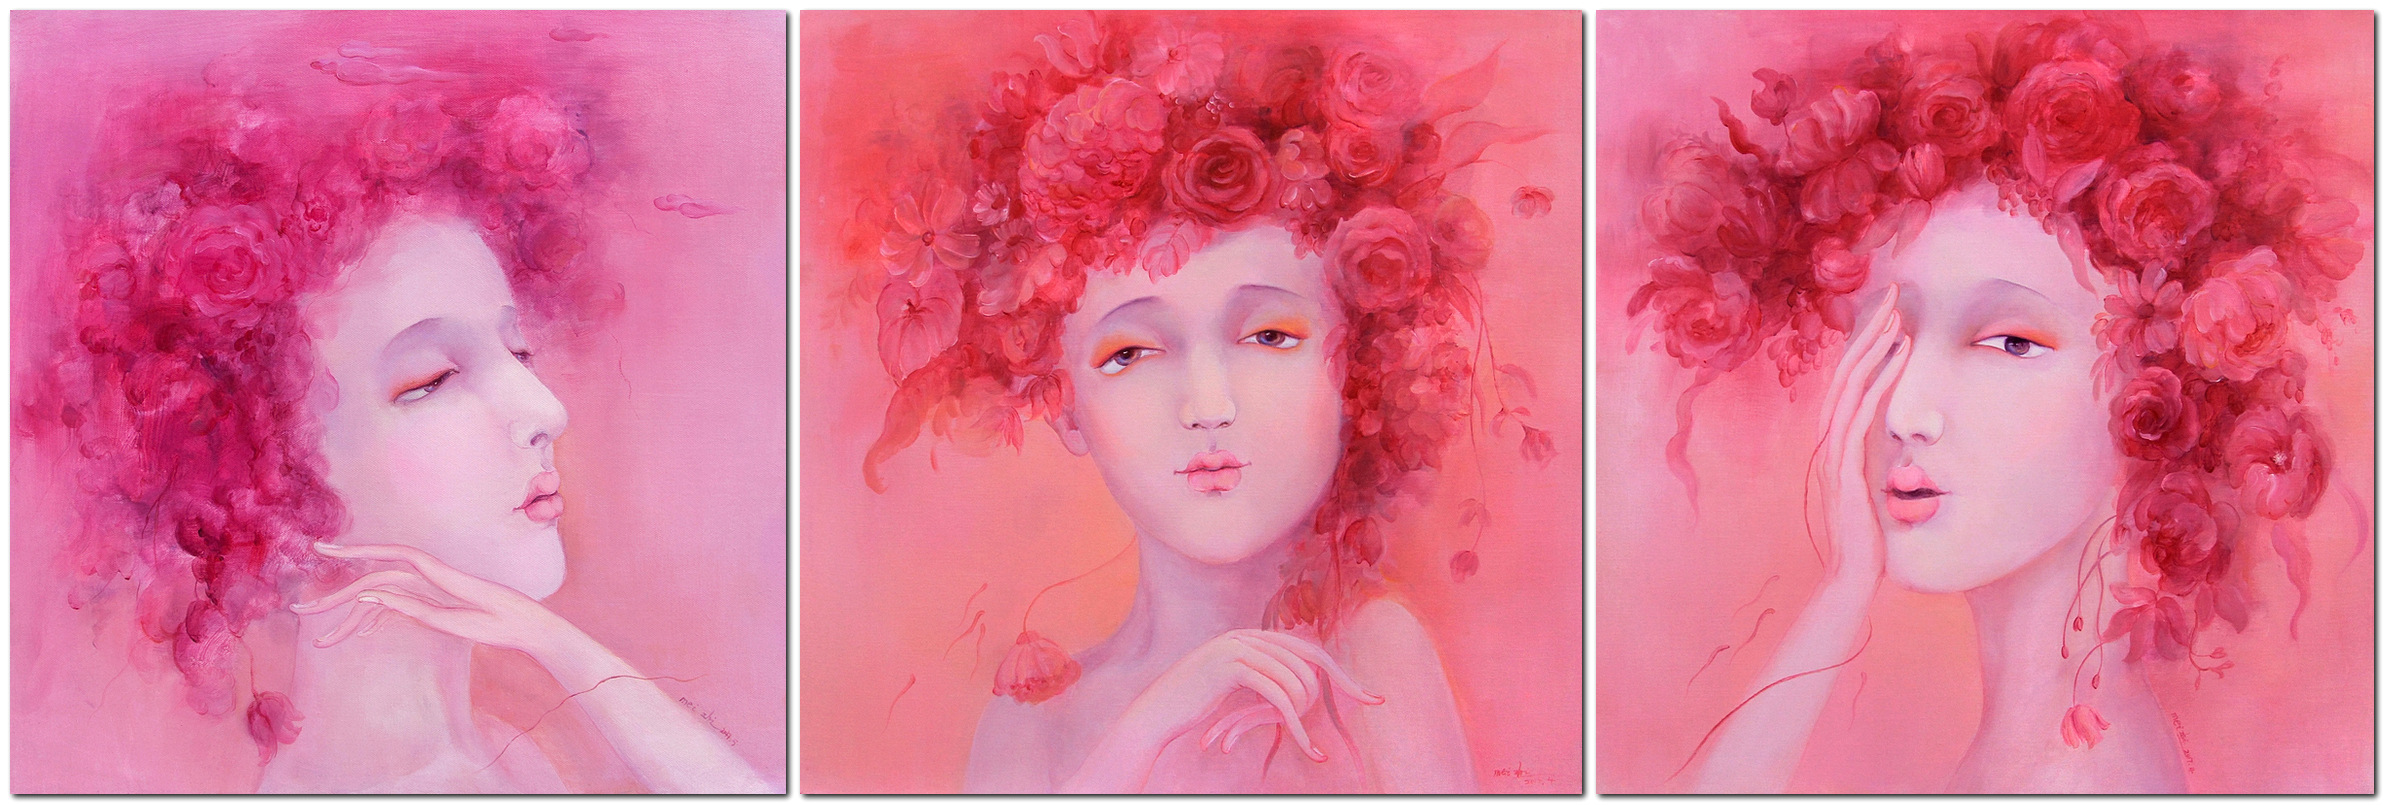 《粉红回忆系列》60x60cm x3 布面油画·人物 2017年